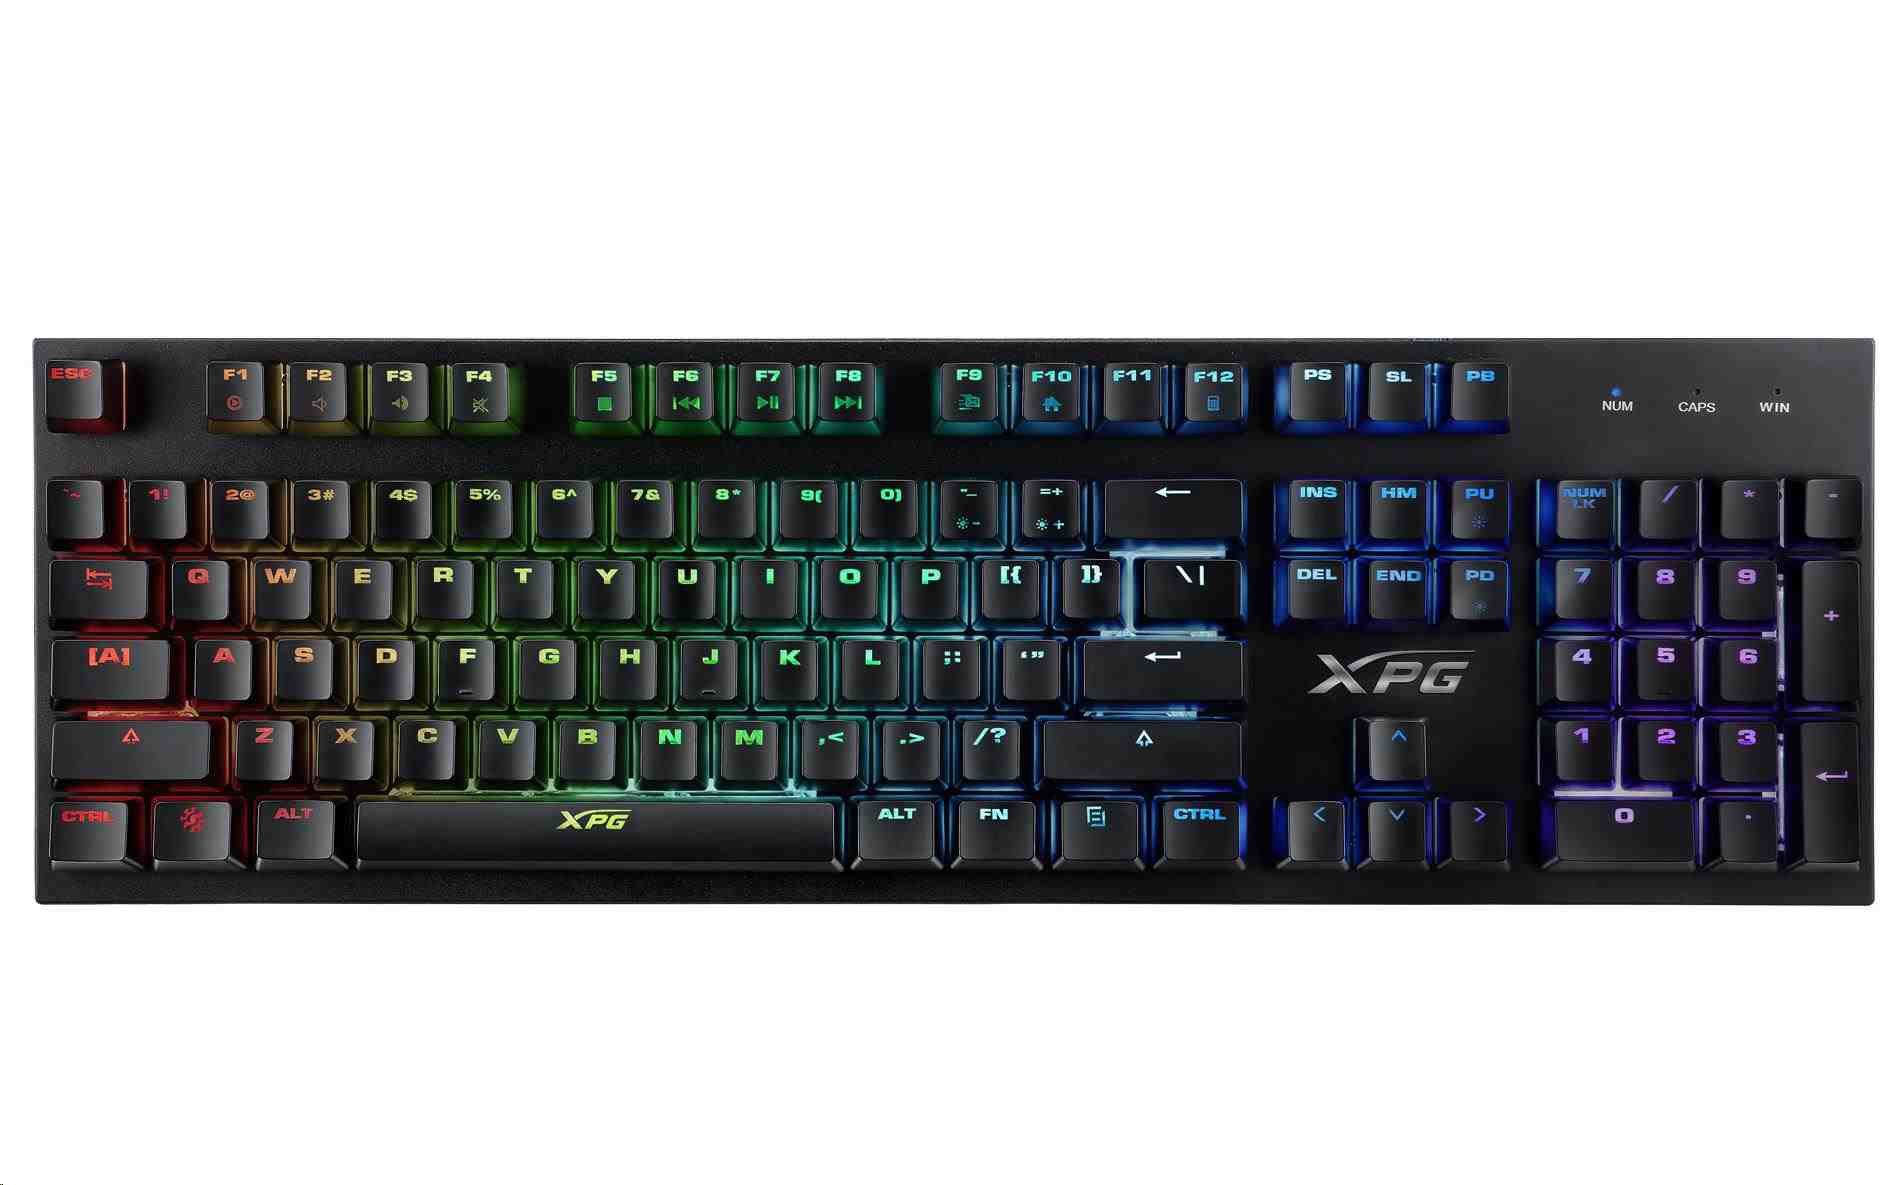 ADATA XPG klávesnice INFAREX K10 Gaming keyboard5 